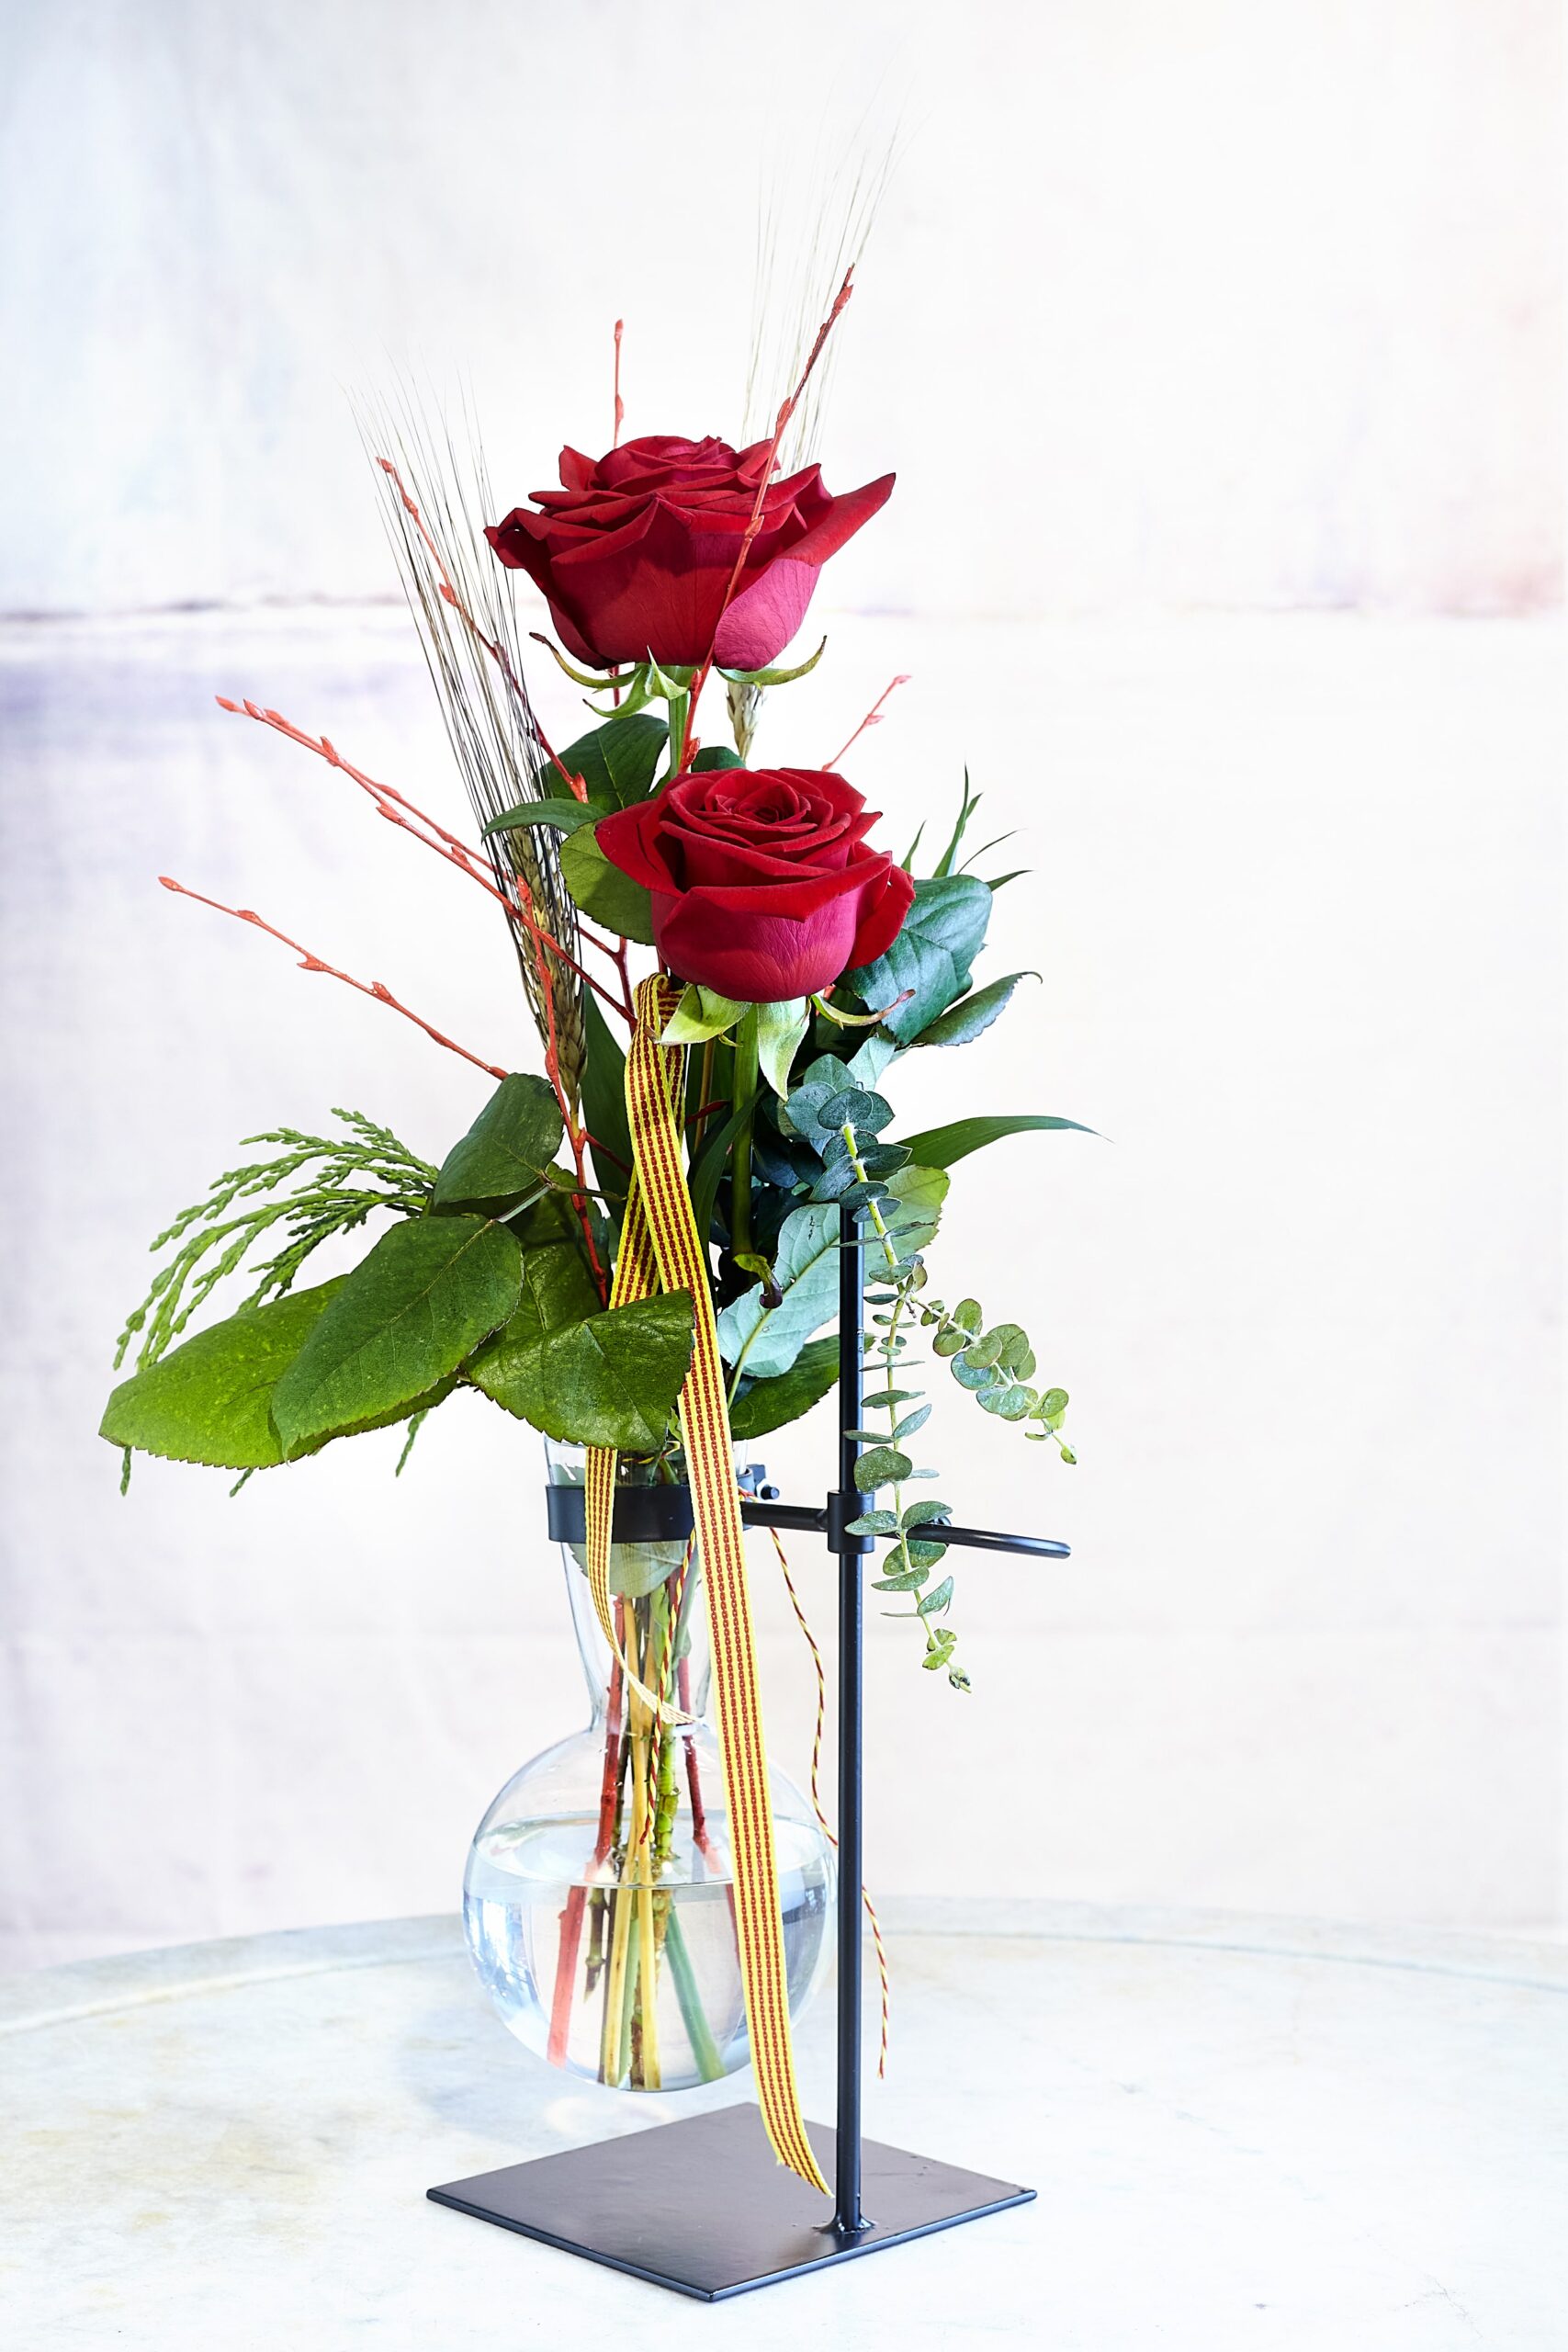 Ram de roses Sant Jordi. A VENTURA Floristes trobaràs les roses més fresques i de qualitat.